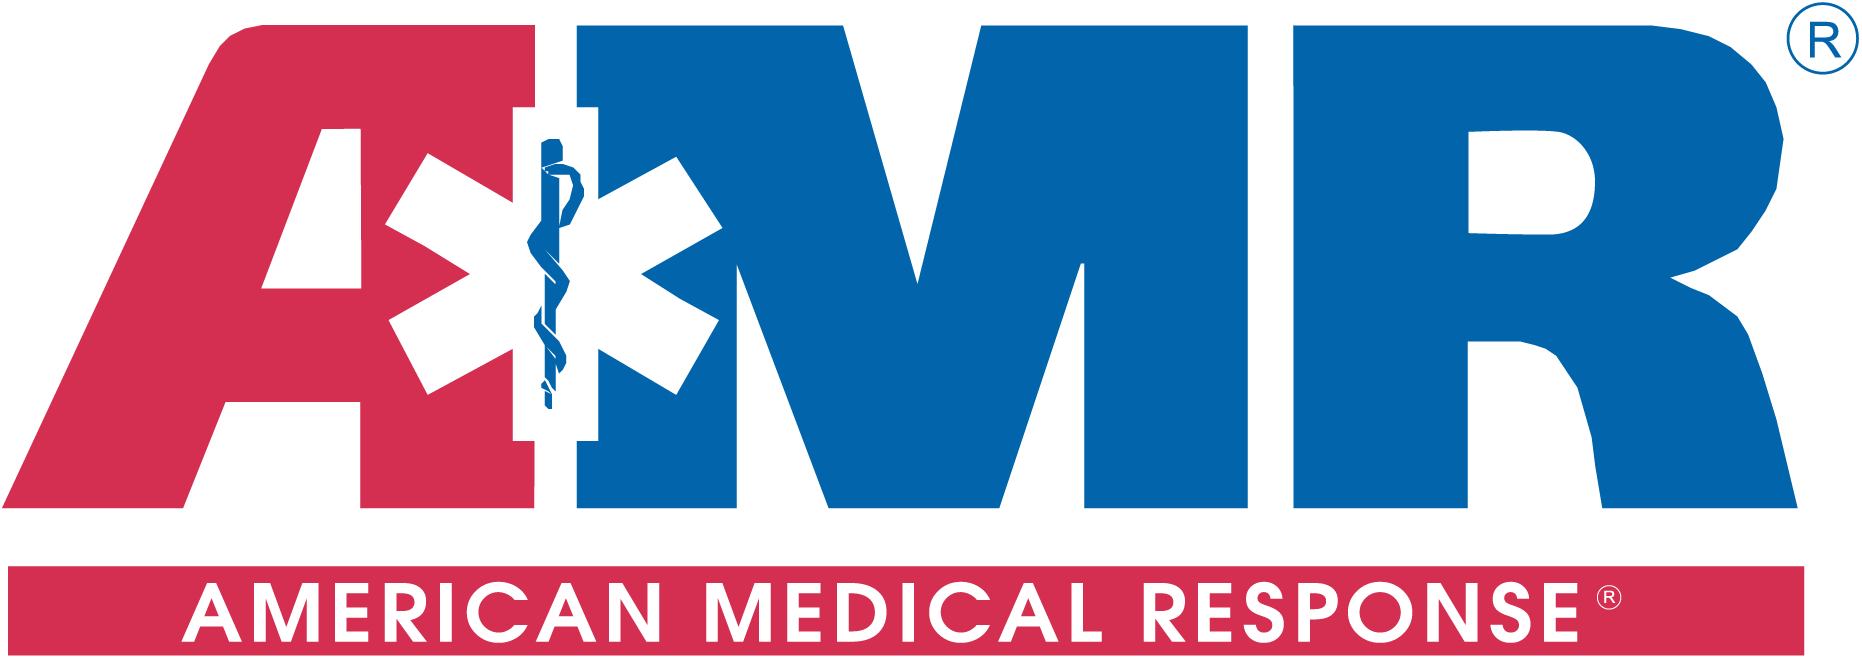 American_Medical_Response_Logo.png